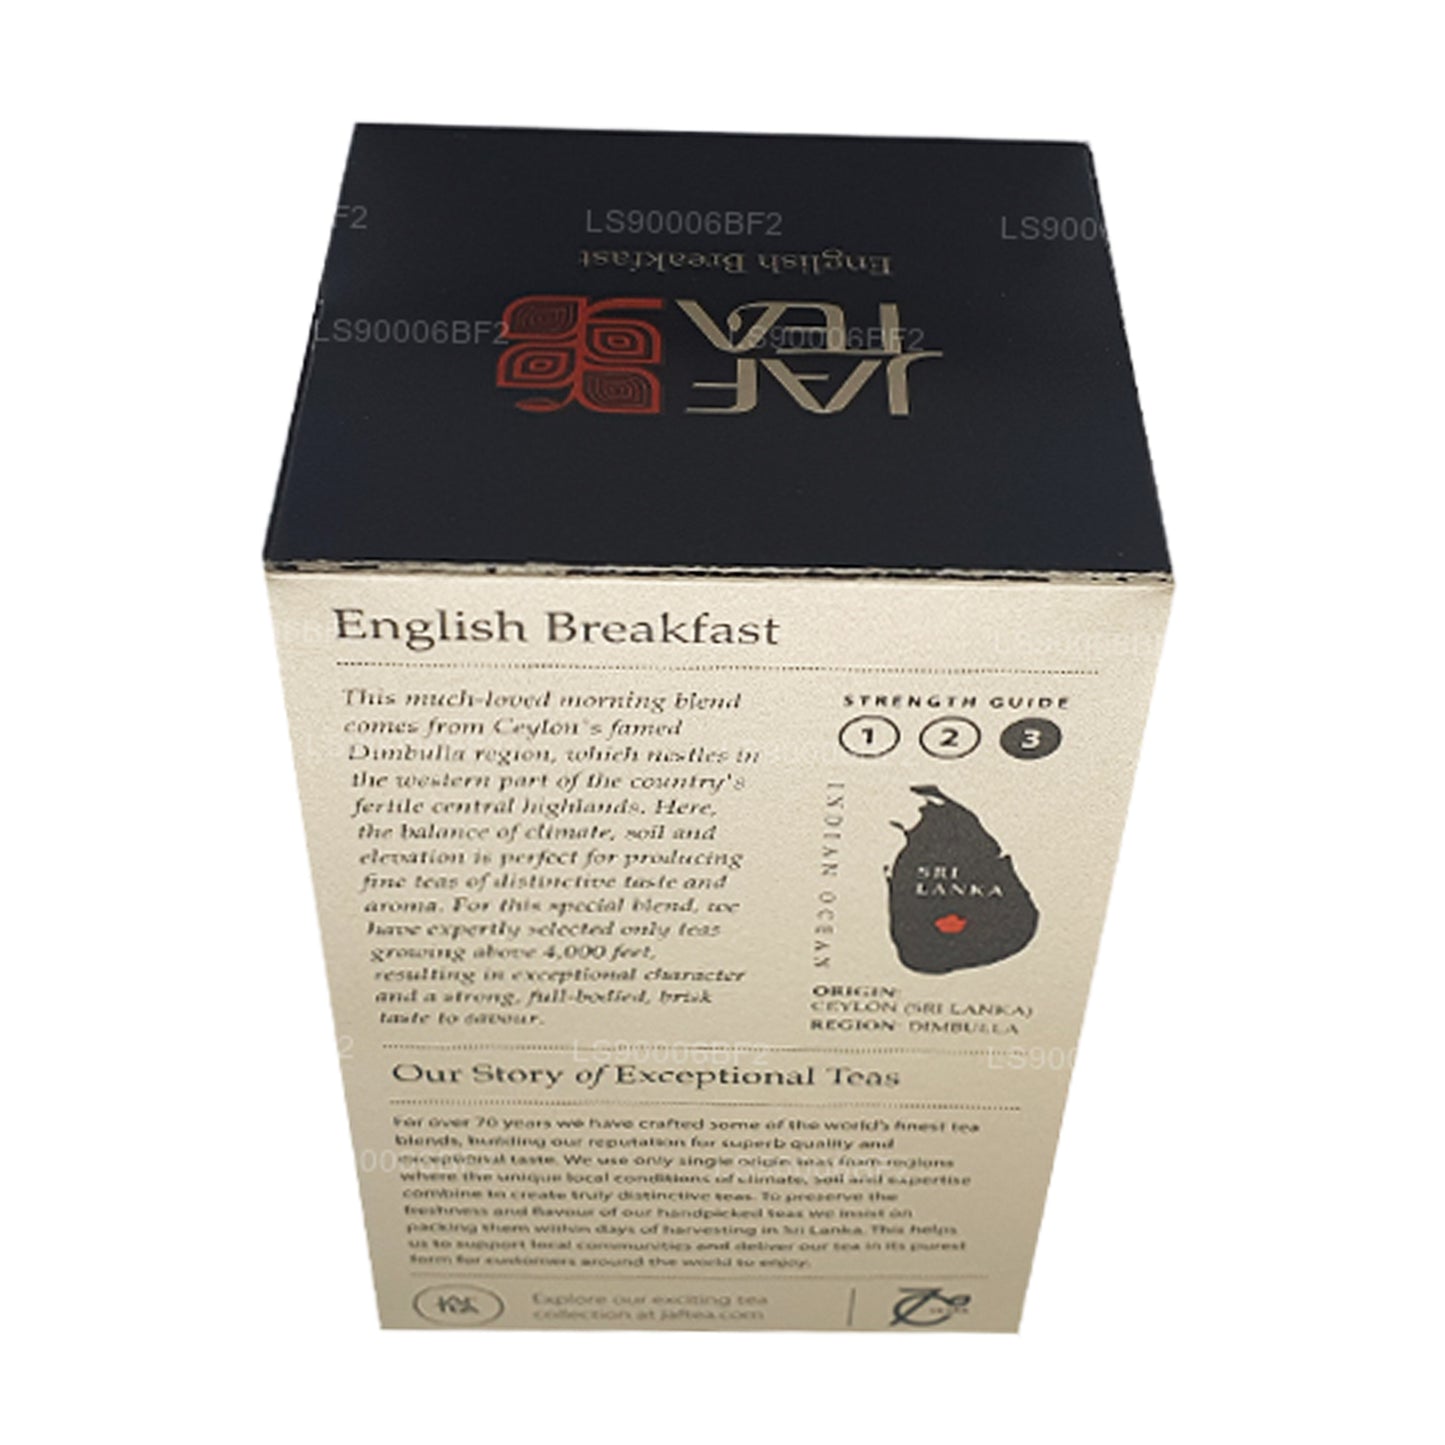 Английский завтрак Jaf Tea (40 г) 20 пакетиков чая